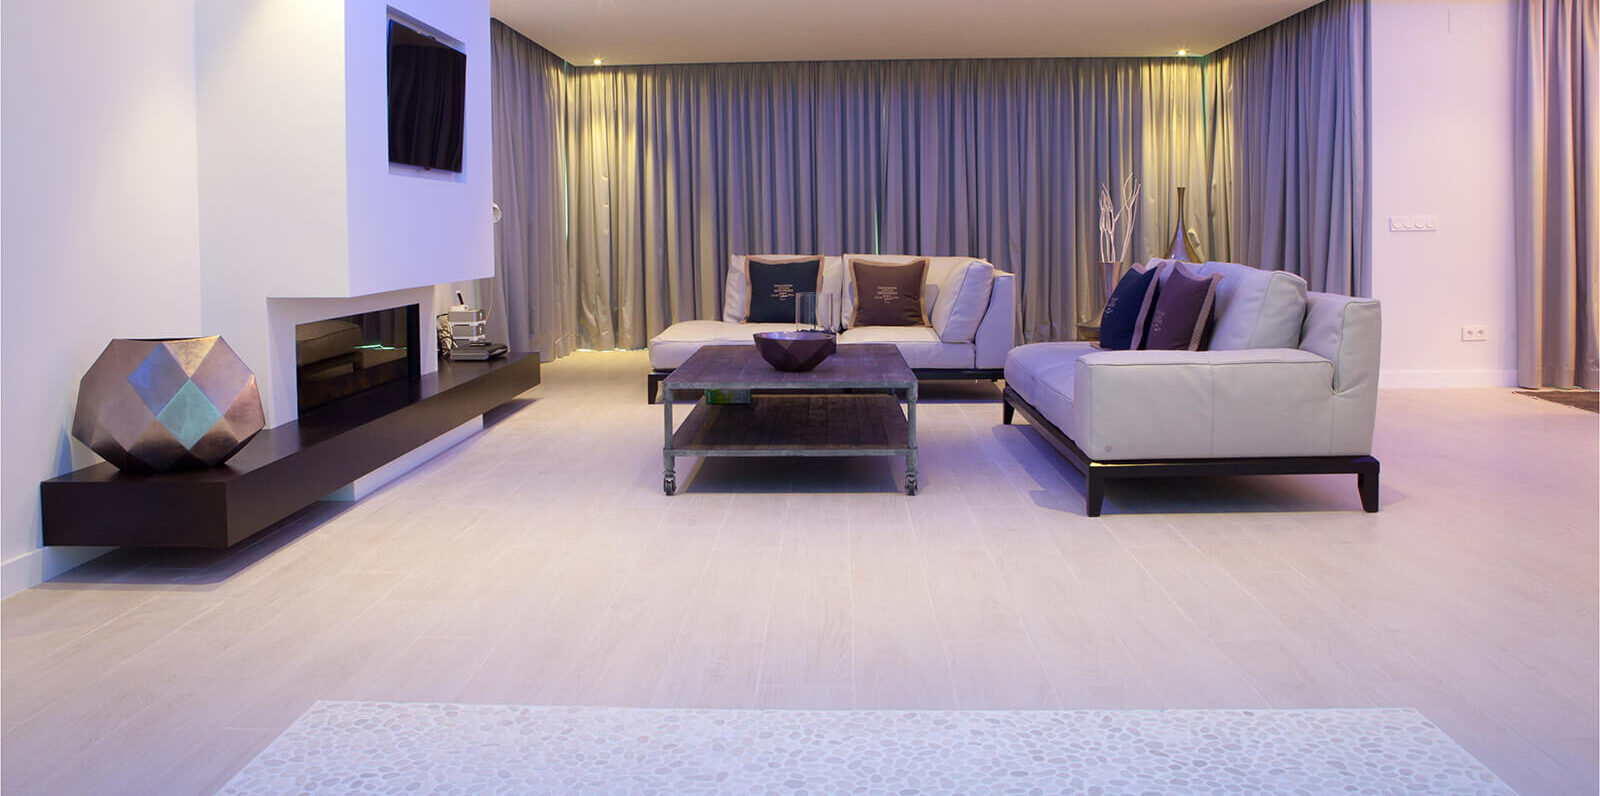 Bachelor Dream Villa living room